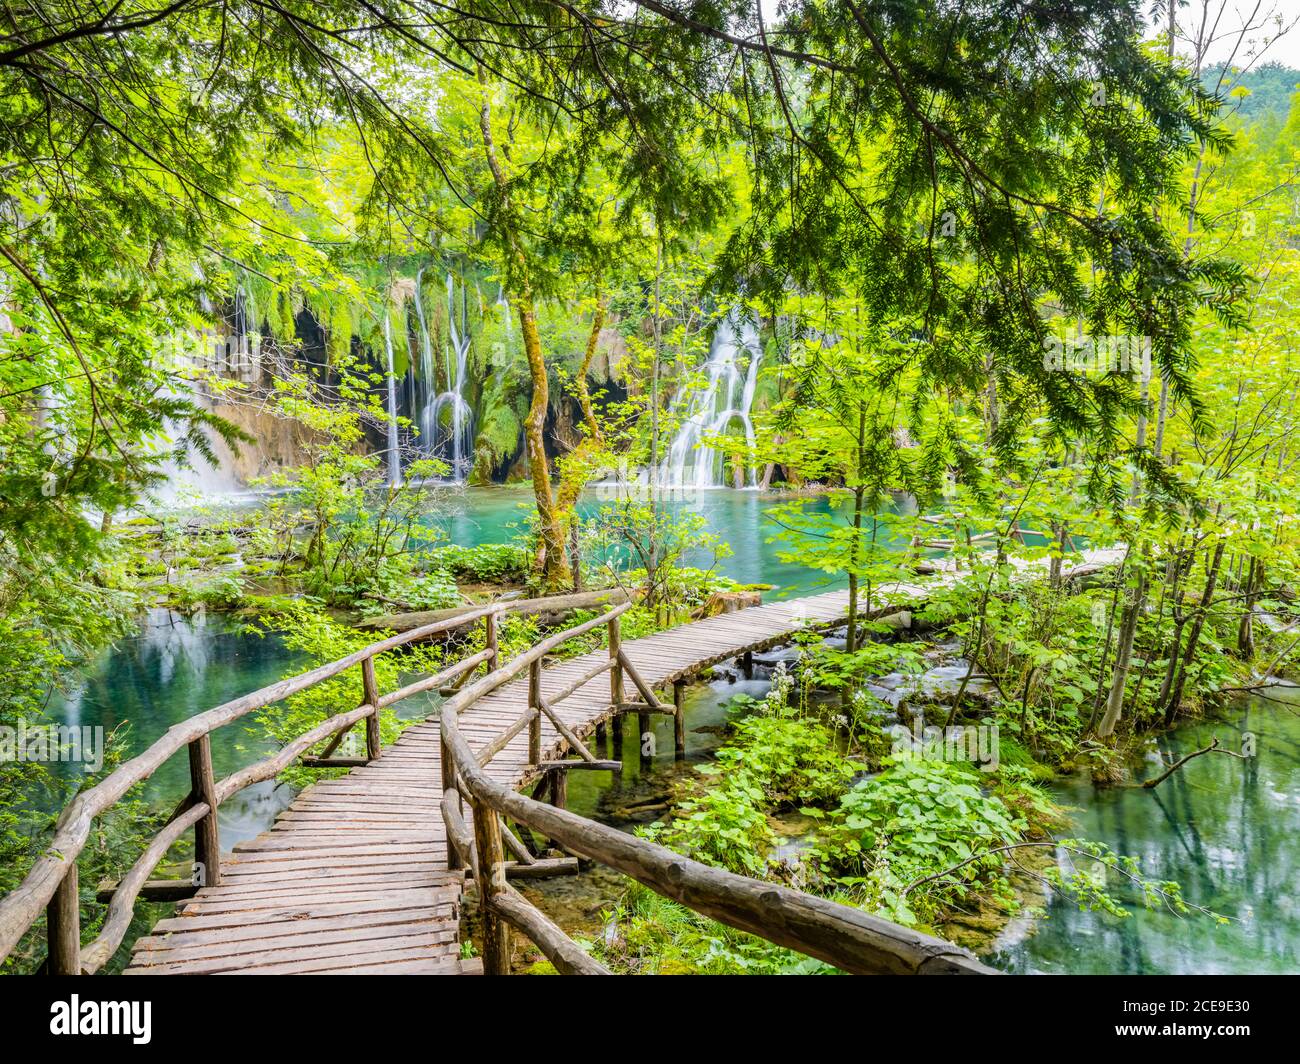 Panorami fantastici come il parco nazionale delle fiabe da sogno di Plitvice Laghi in Croazia Europa acqua fluente cascata turchese acqua Foto Stock